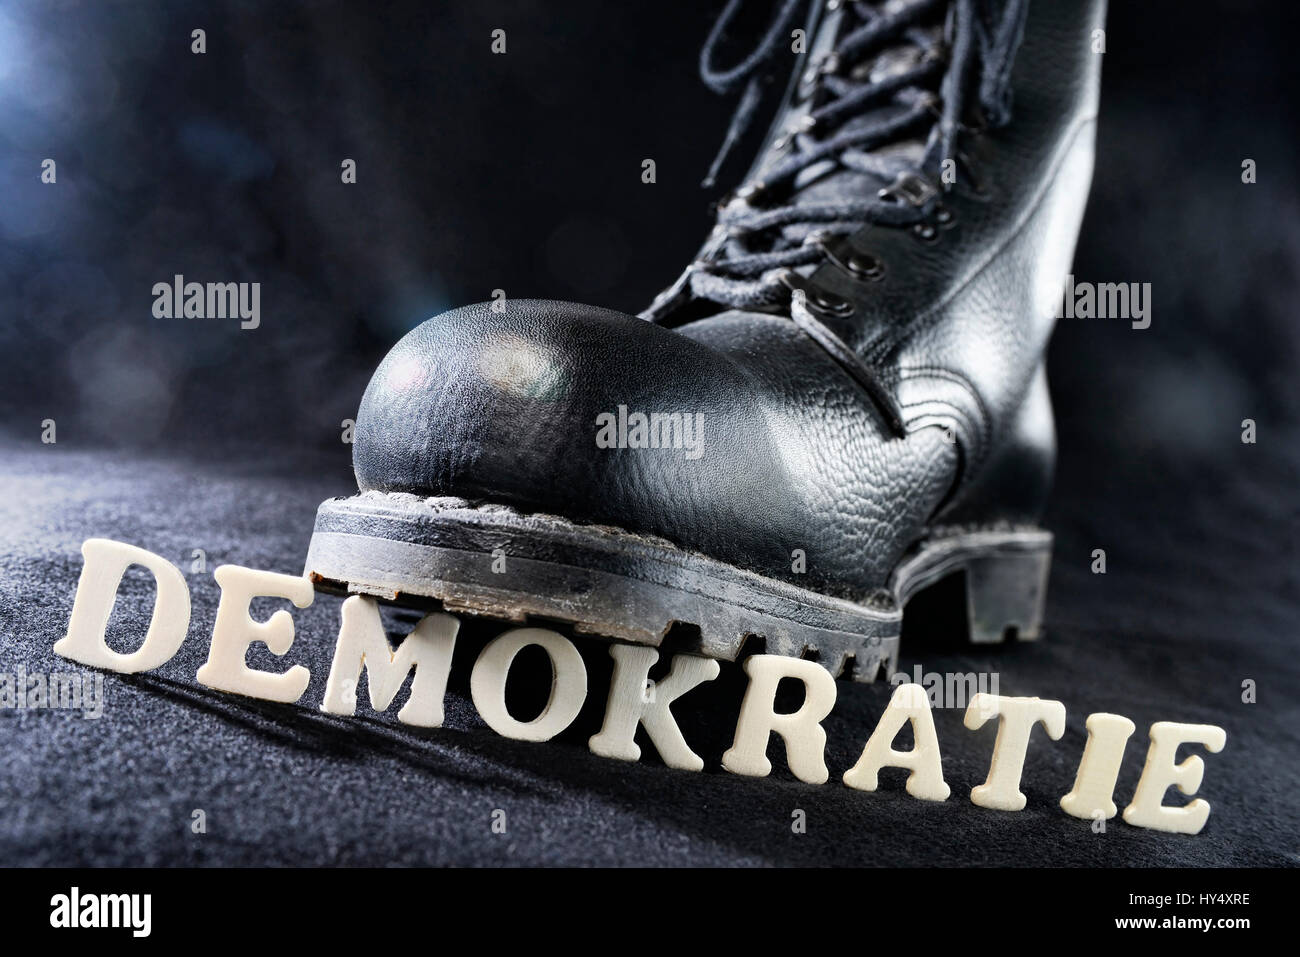 Jumper's boot on democracy stroke, right-wing extremism, Springerstiefel auf Demokratie-Schriftzug, Rechtsextremismus Stock Photo